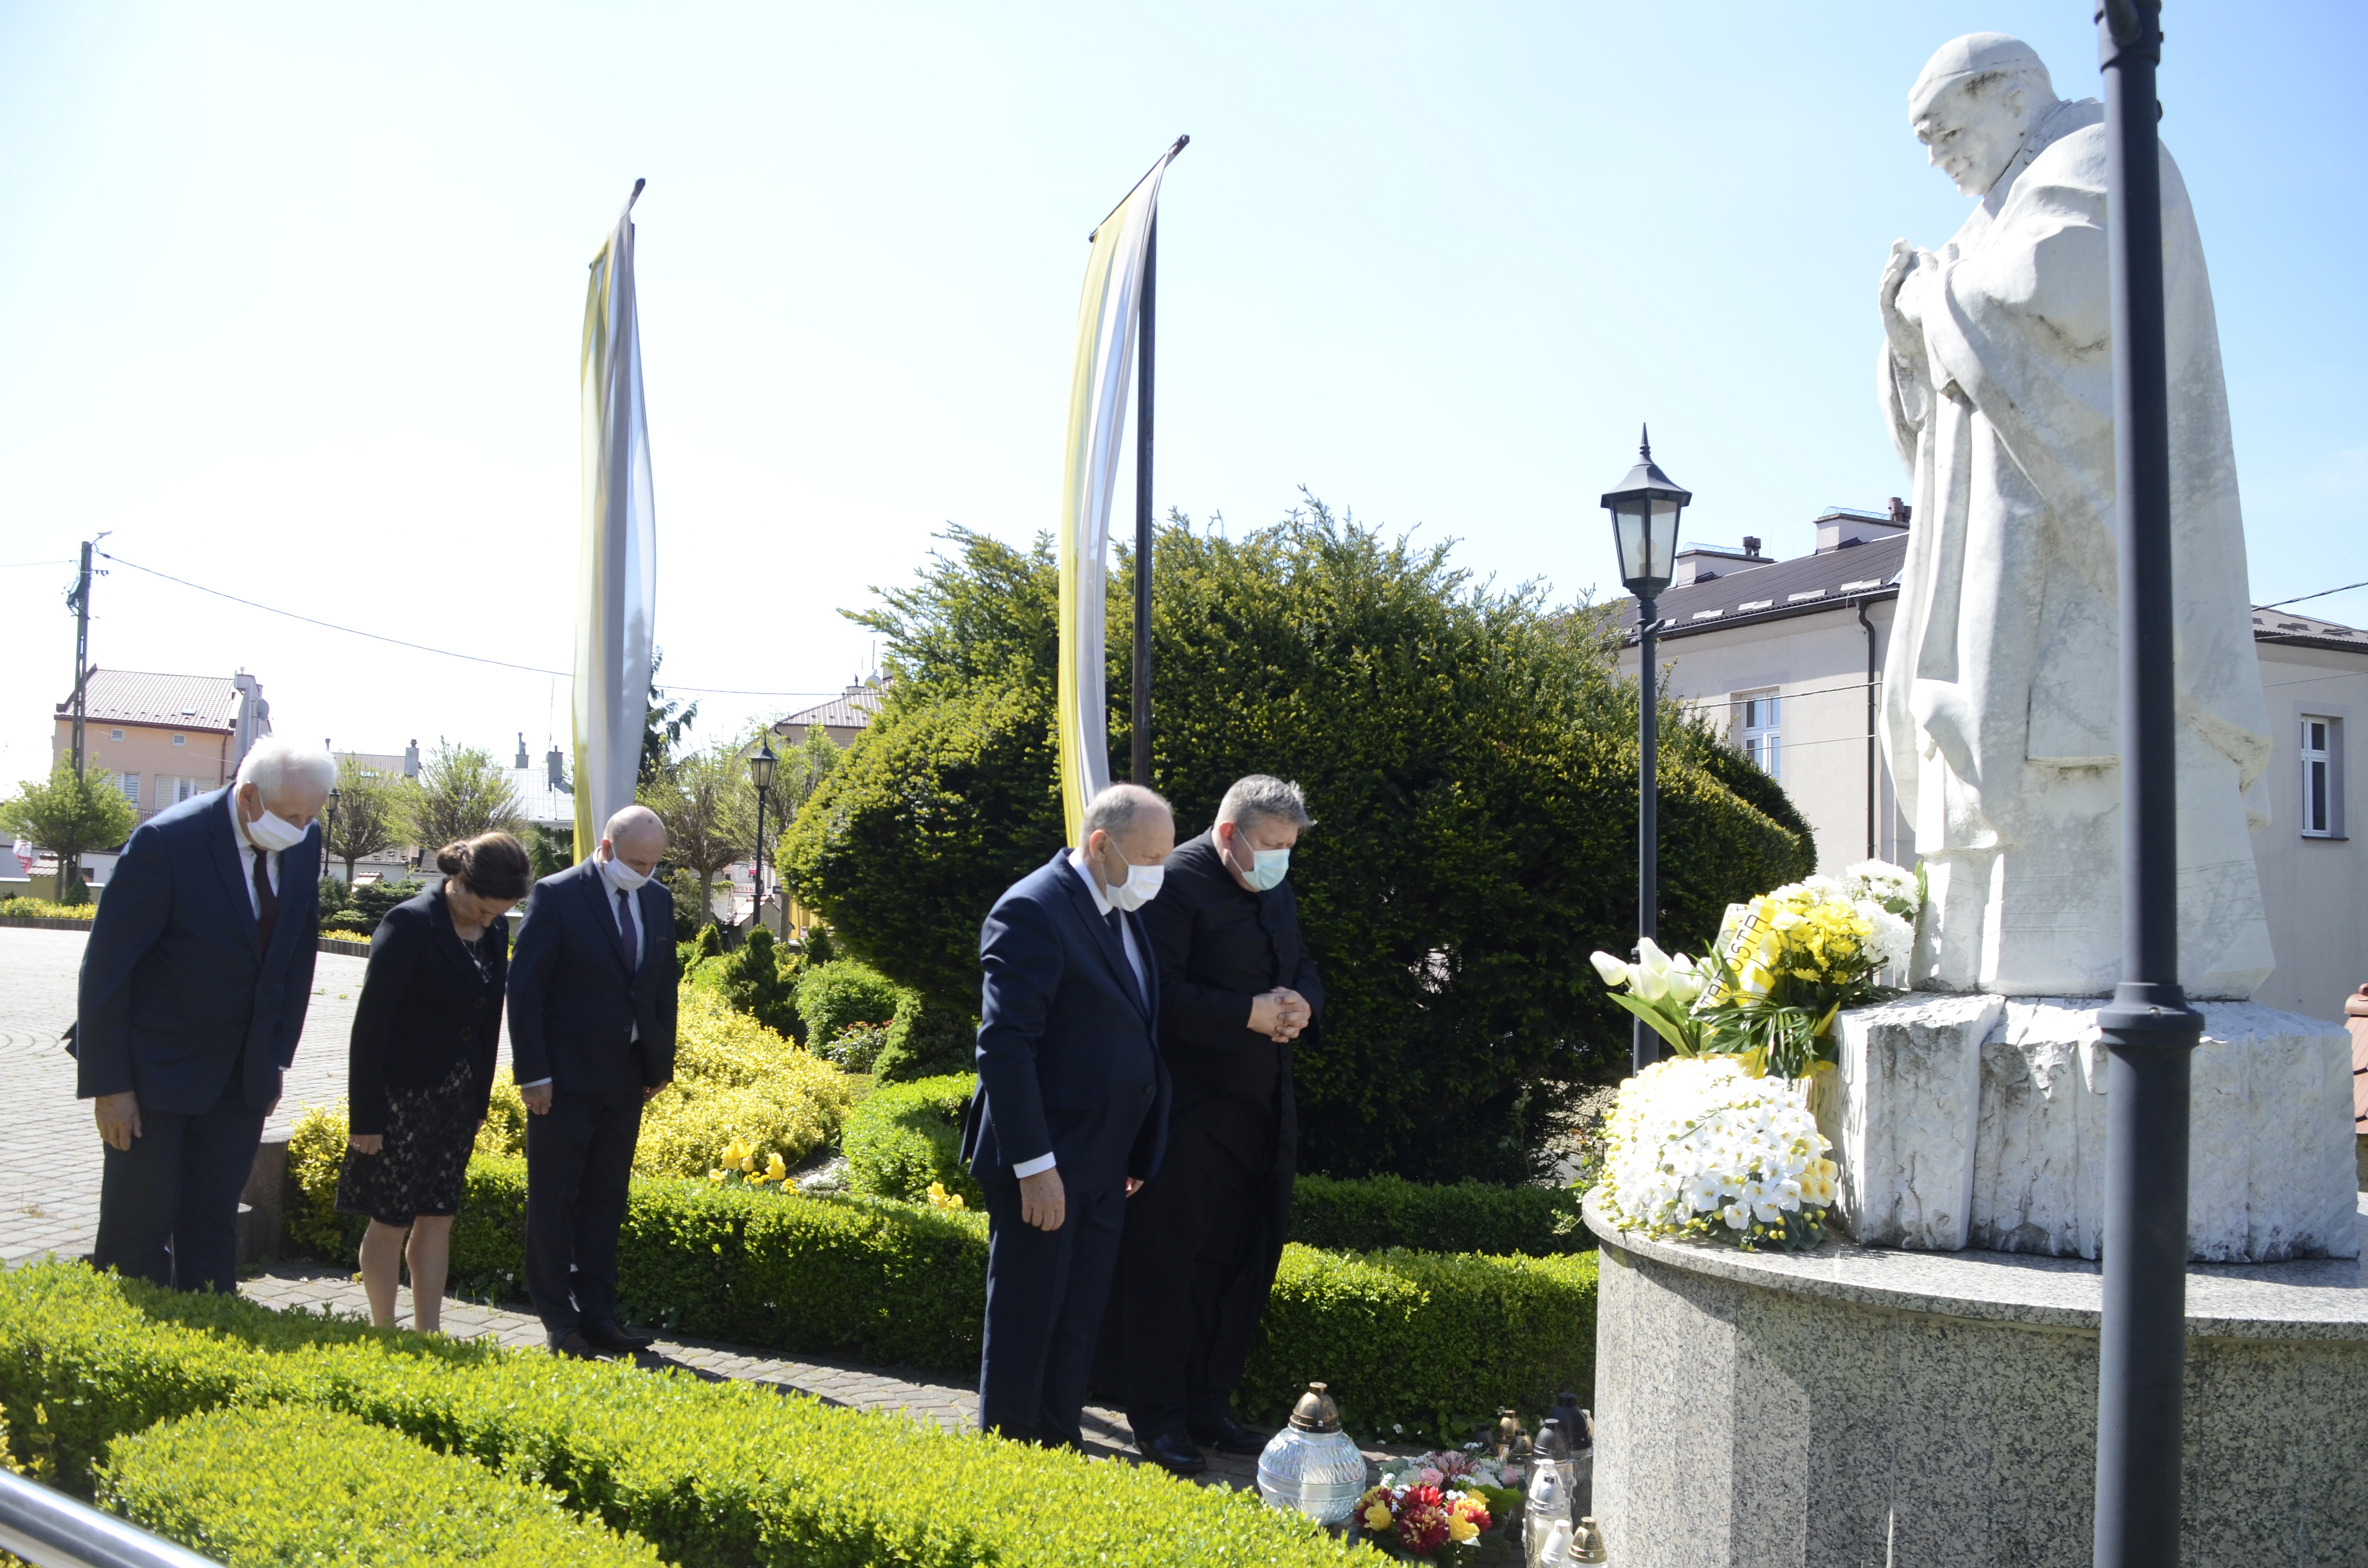 Samorządowcy, poseł i ksiądz złożyli kwiaty przed pomnikiem papieża [FOTO] - Zdjęcie główne